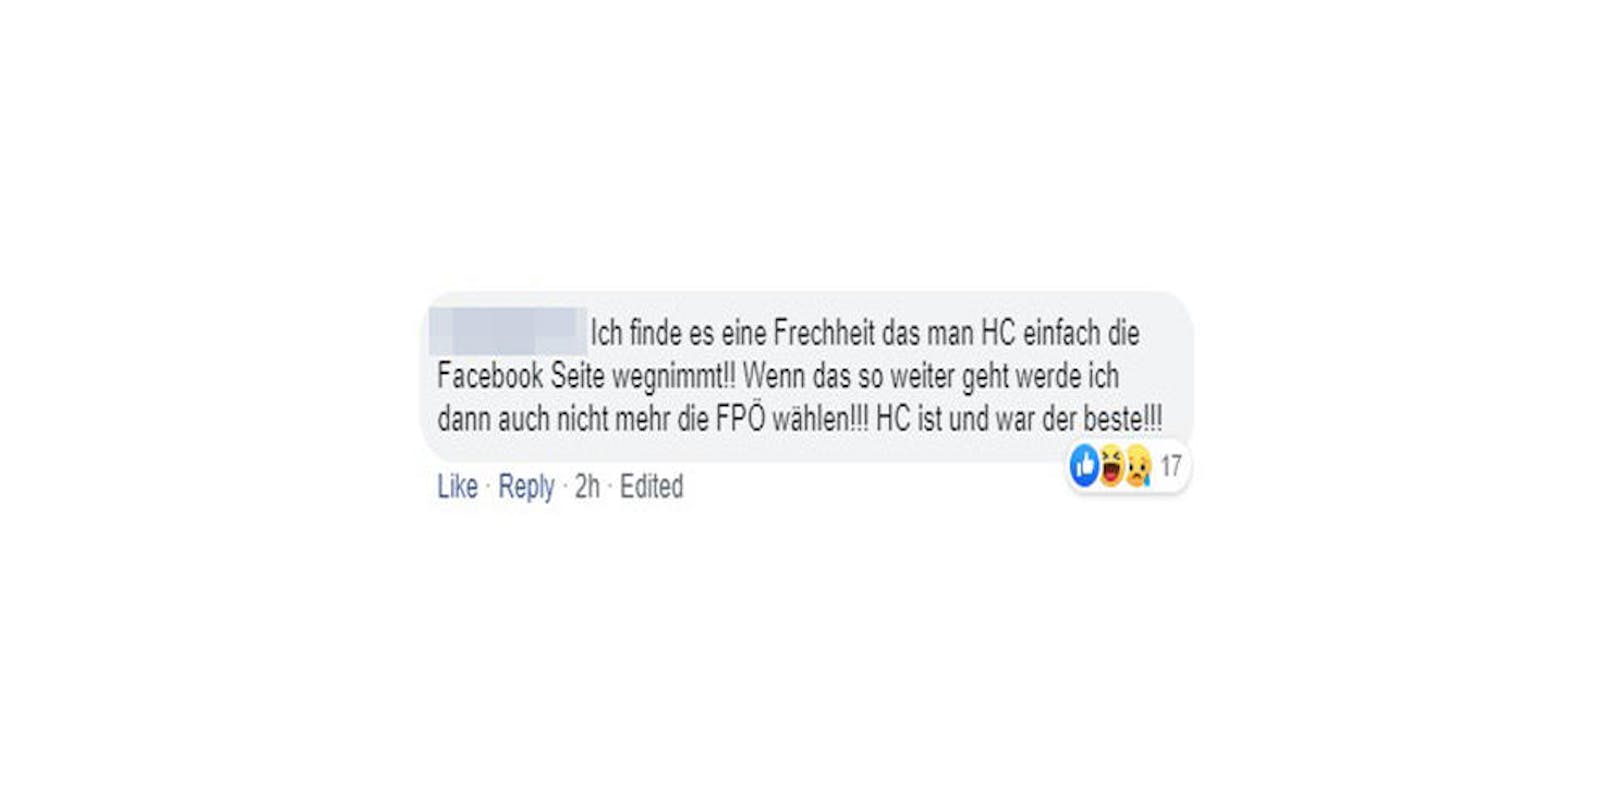 Einige Wähler drohen sogar, nicht mehr die FPÖ zu wählen: "Ich finde es eine Frechheit, dass man HC einfach die Facebook-Seite wegnimmt!! Wenn das so weiter geht, werde ich dann auch nicht mehr die FPÖ wählen!! HC ist und war der beste!!"